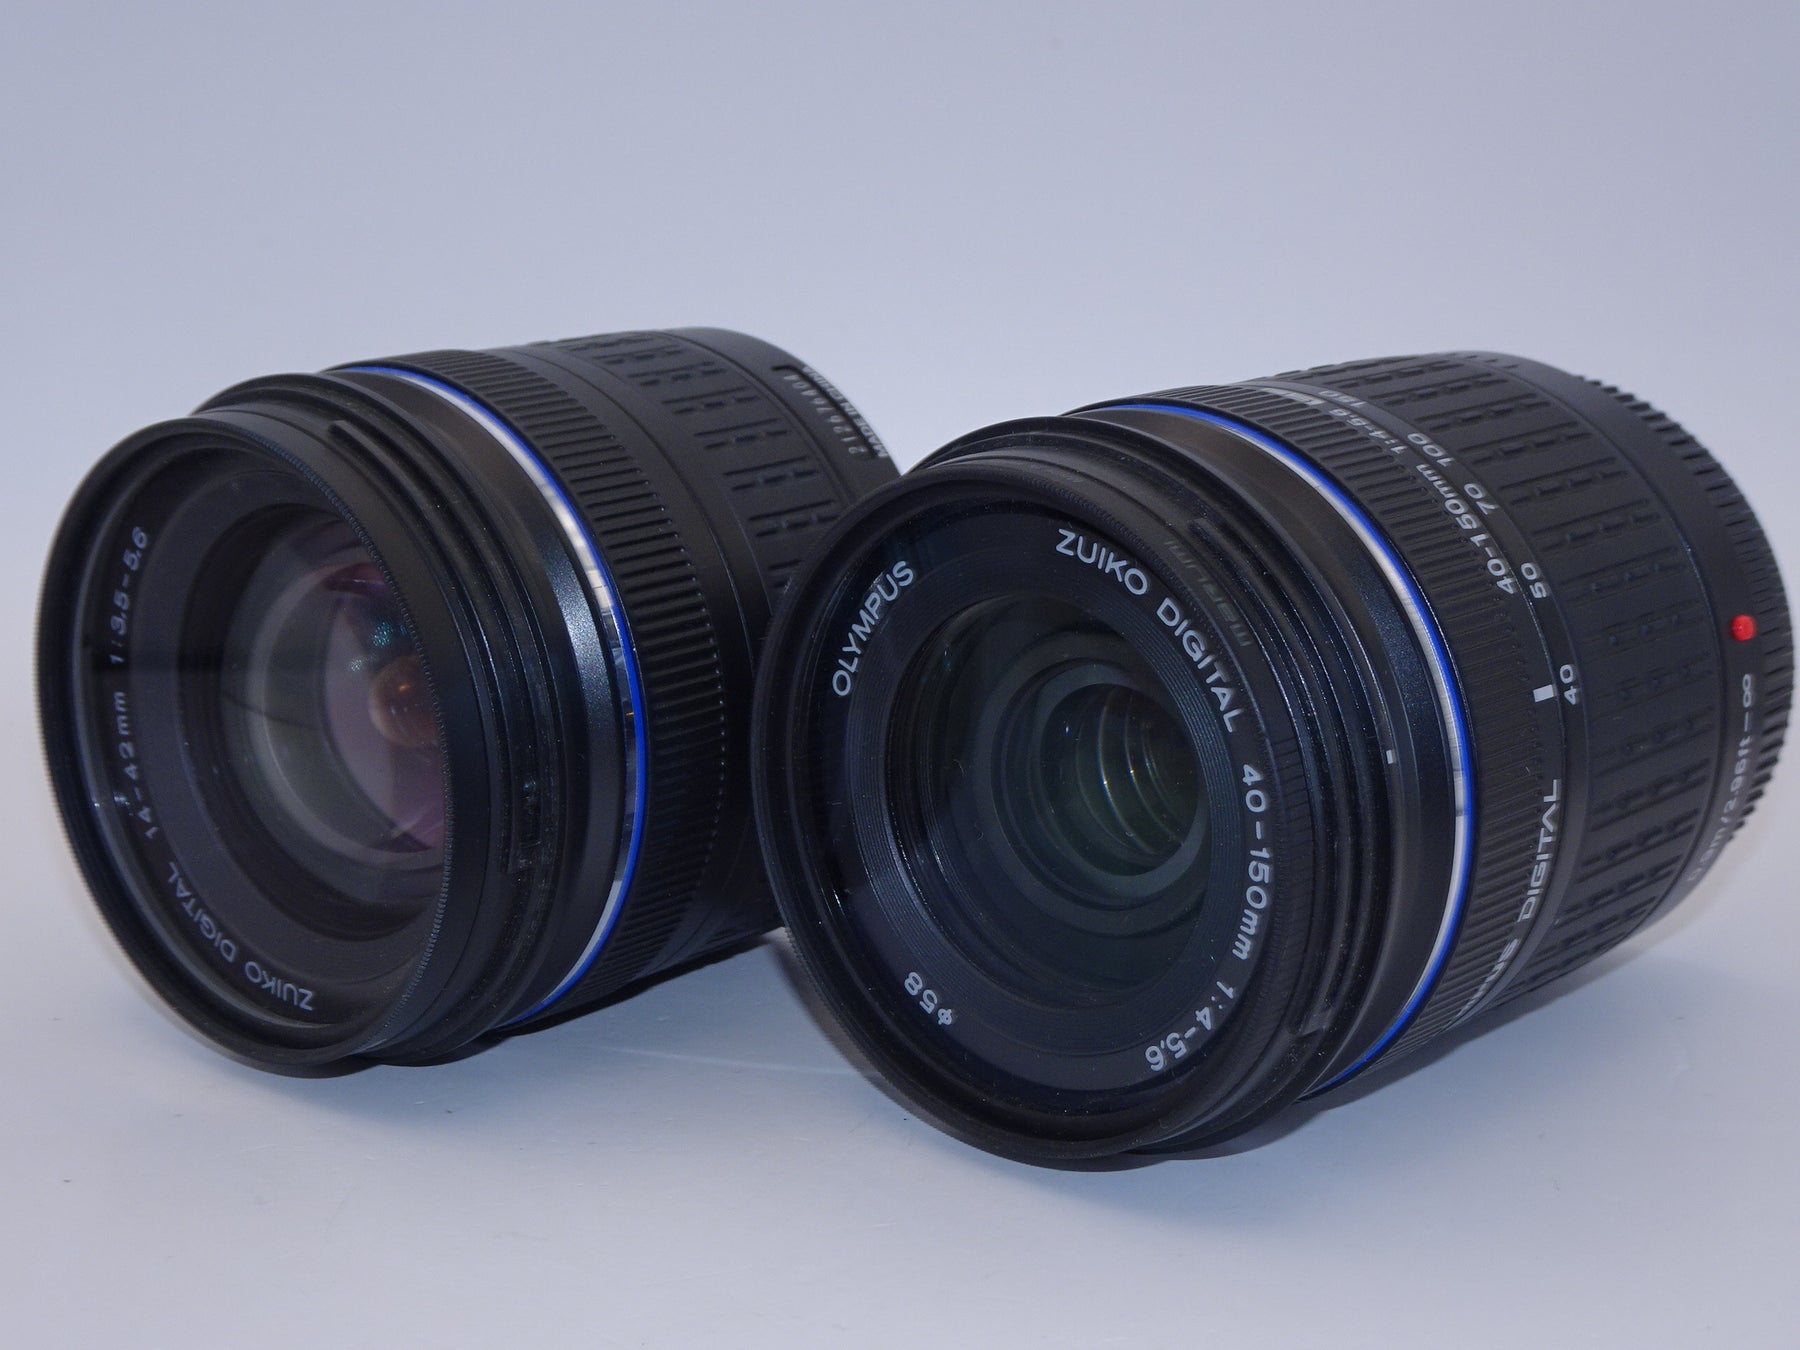 【外観特上級】OLYMPUS デジタル一眼レフカメラ E-420 ダブルズームキット